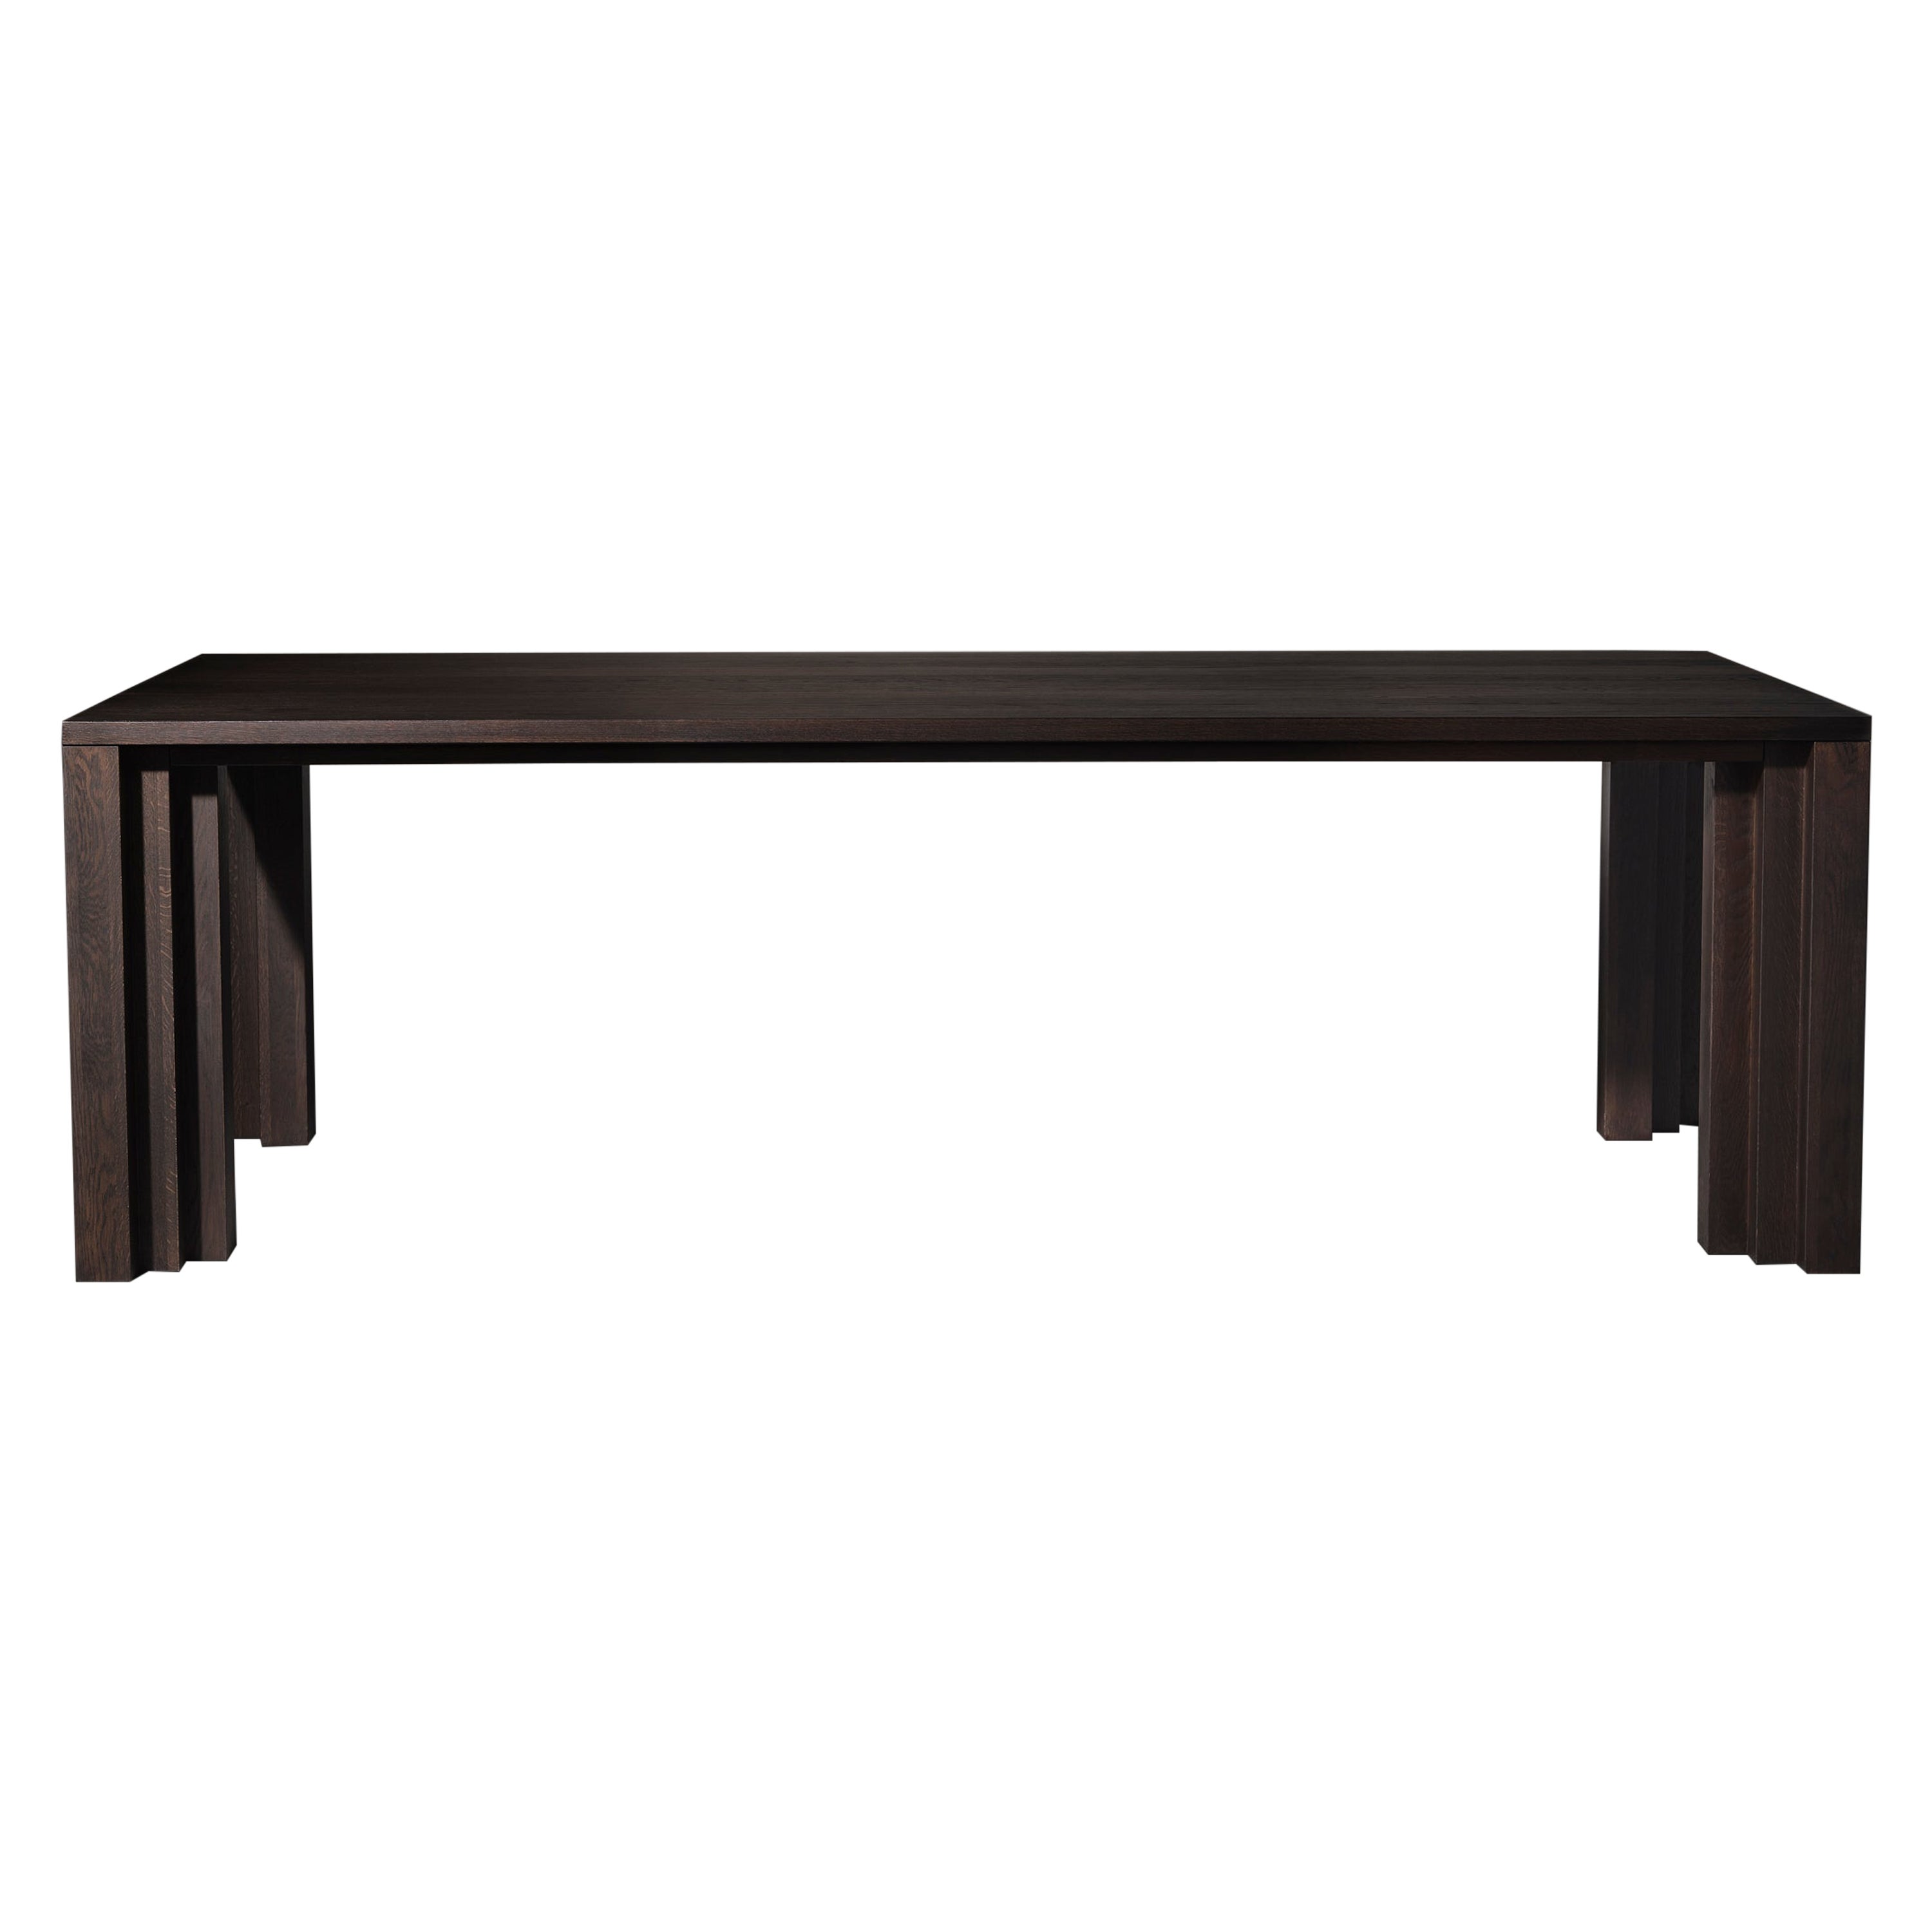 The Modern Brutalist Table de salle à manger Cadence en bois massif - Dark Brown